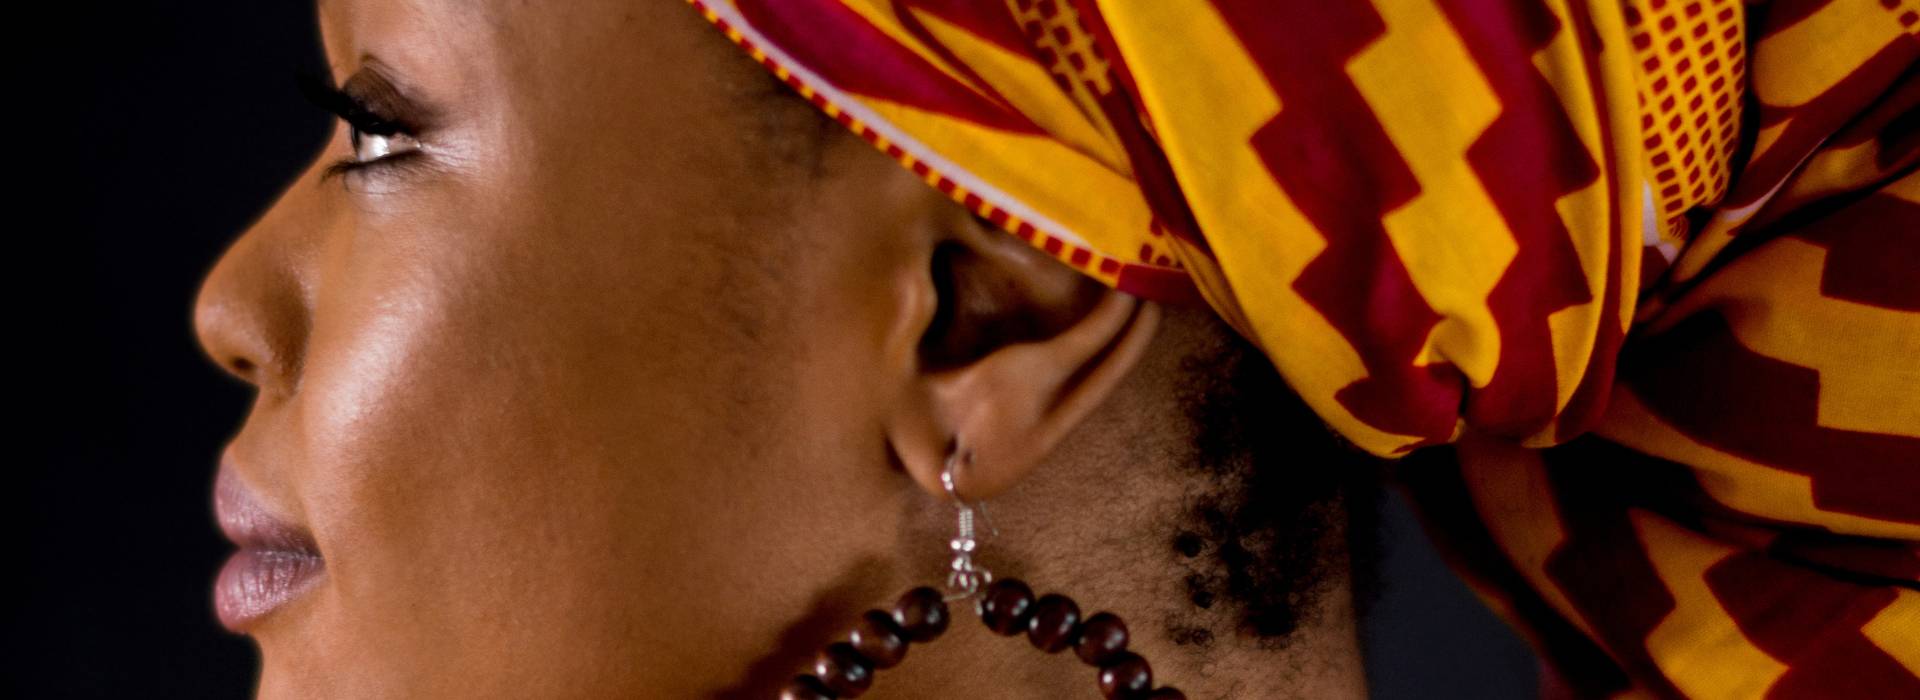 24 de Enero - Día Mundial de la Cultura Africana y de los Afrodescendientes